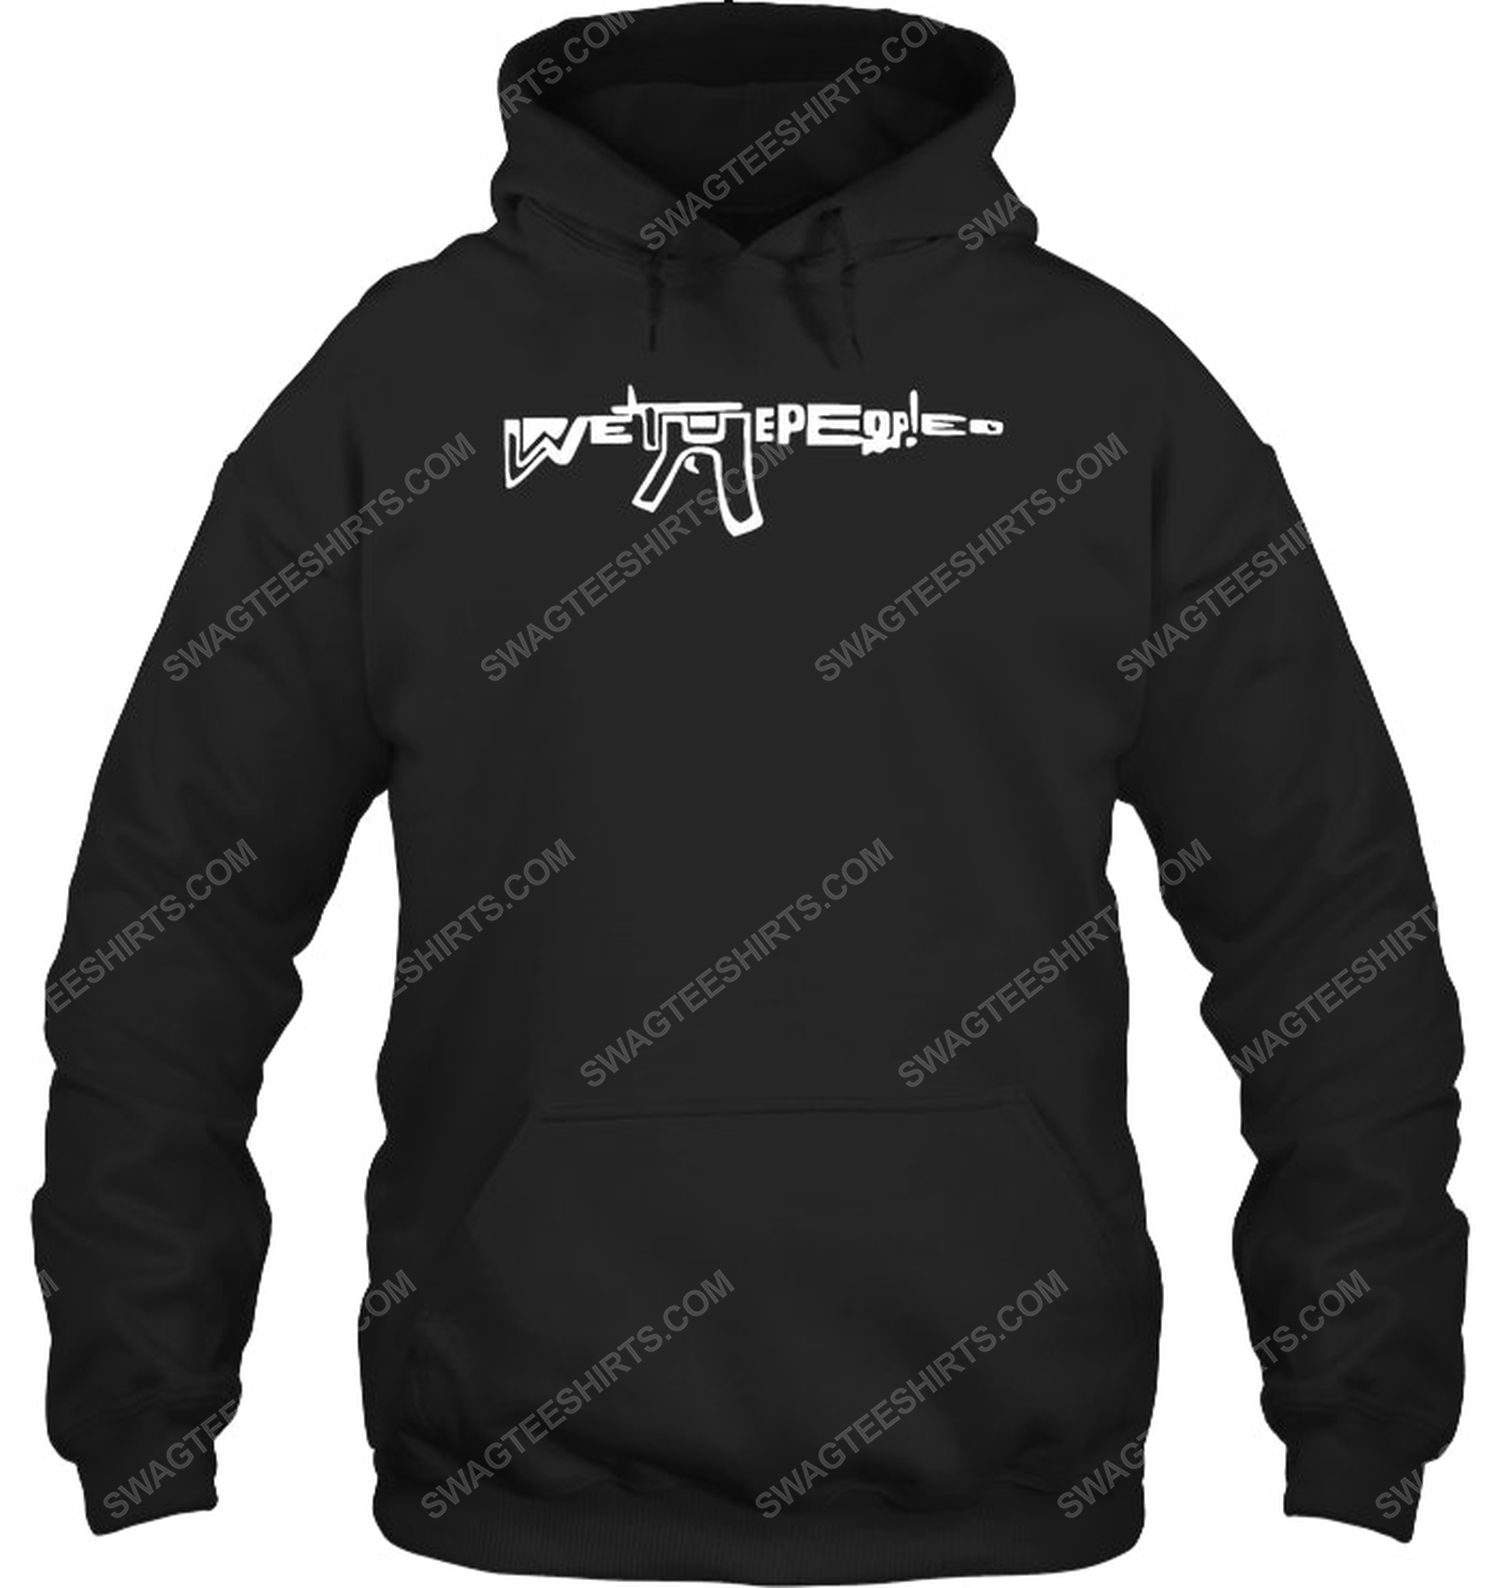 We the people gun political hoodie